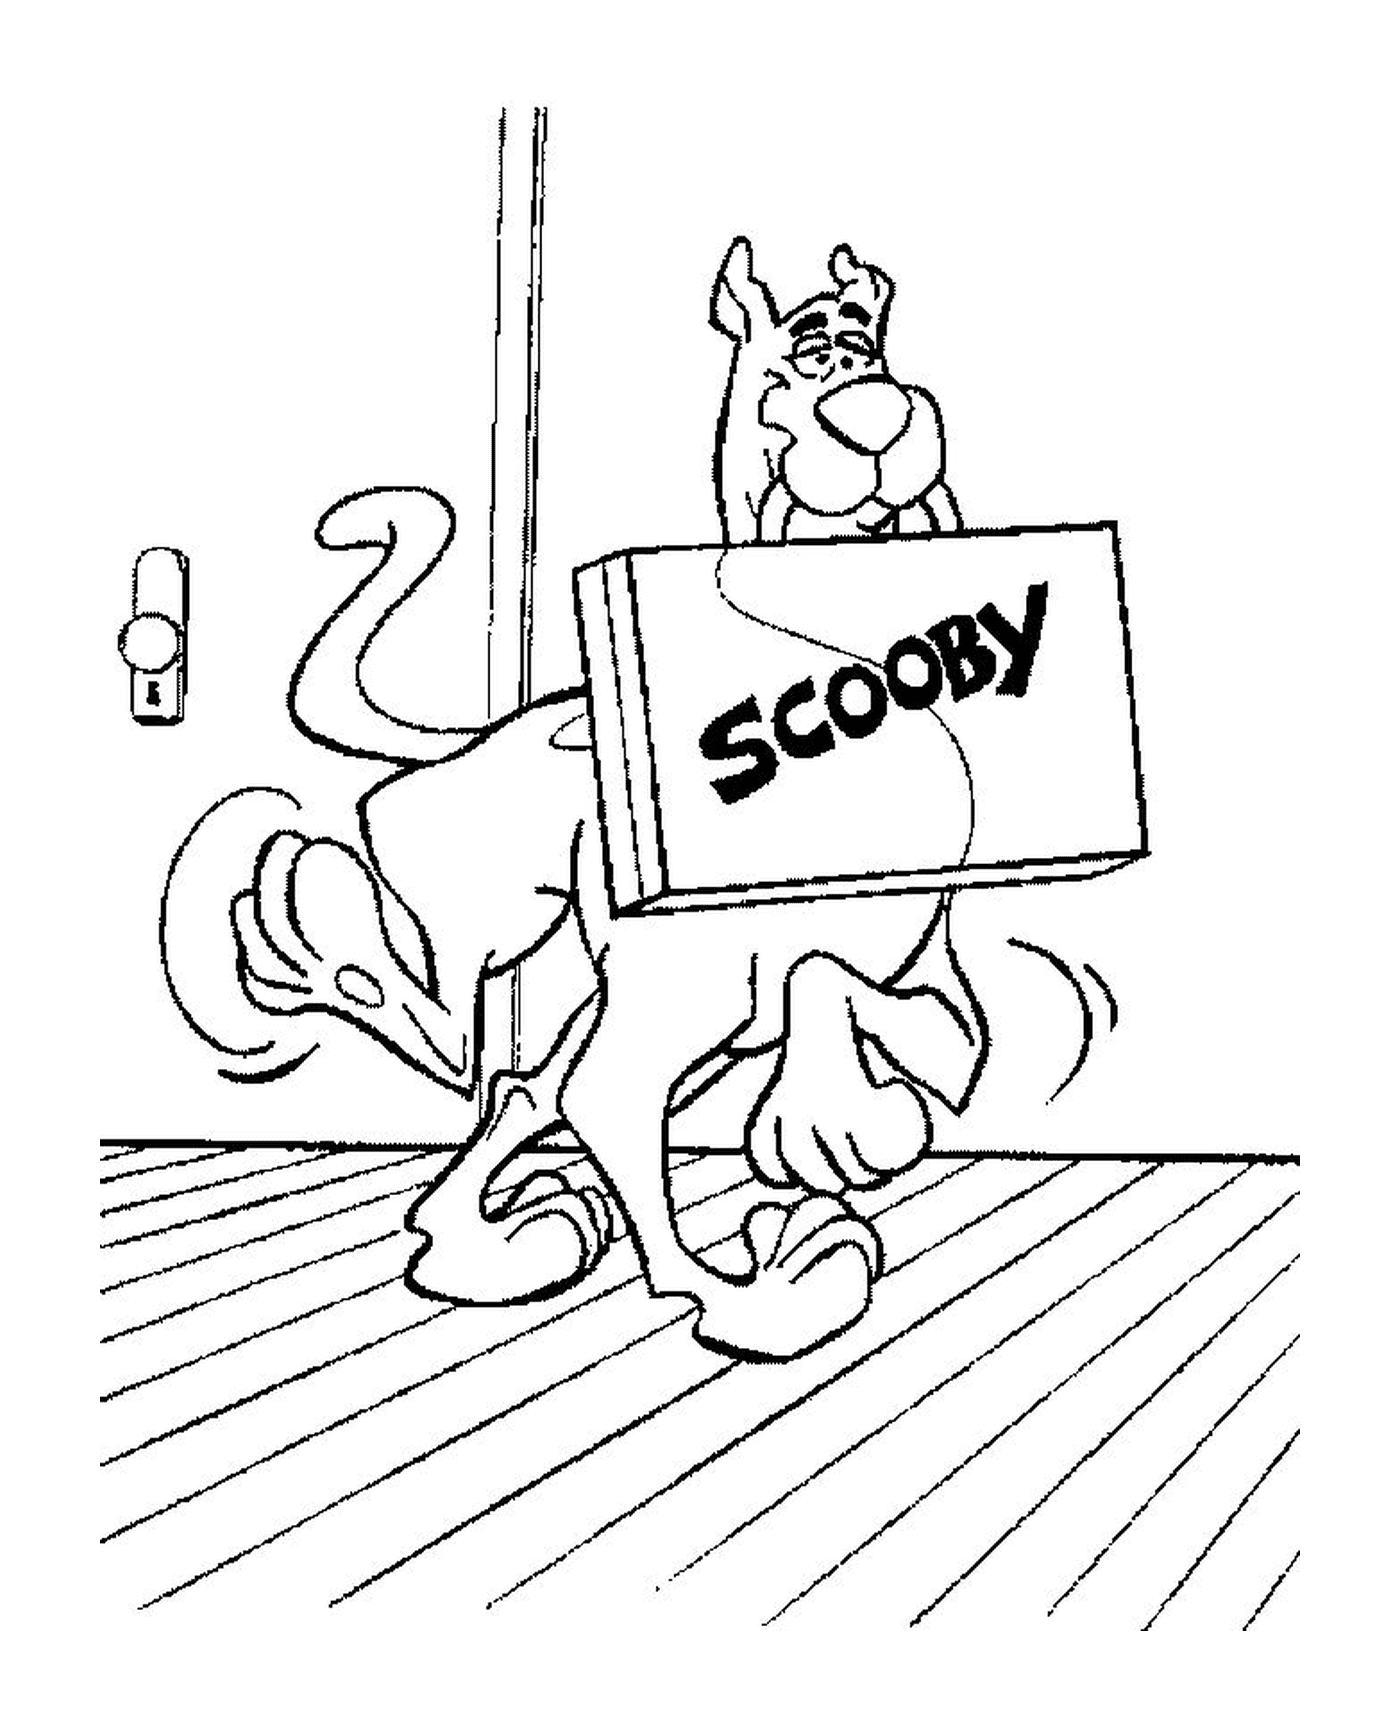  Perro Scooby con su maleta 